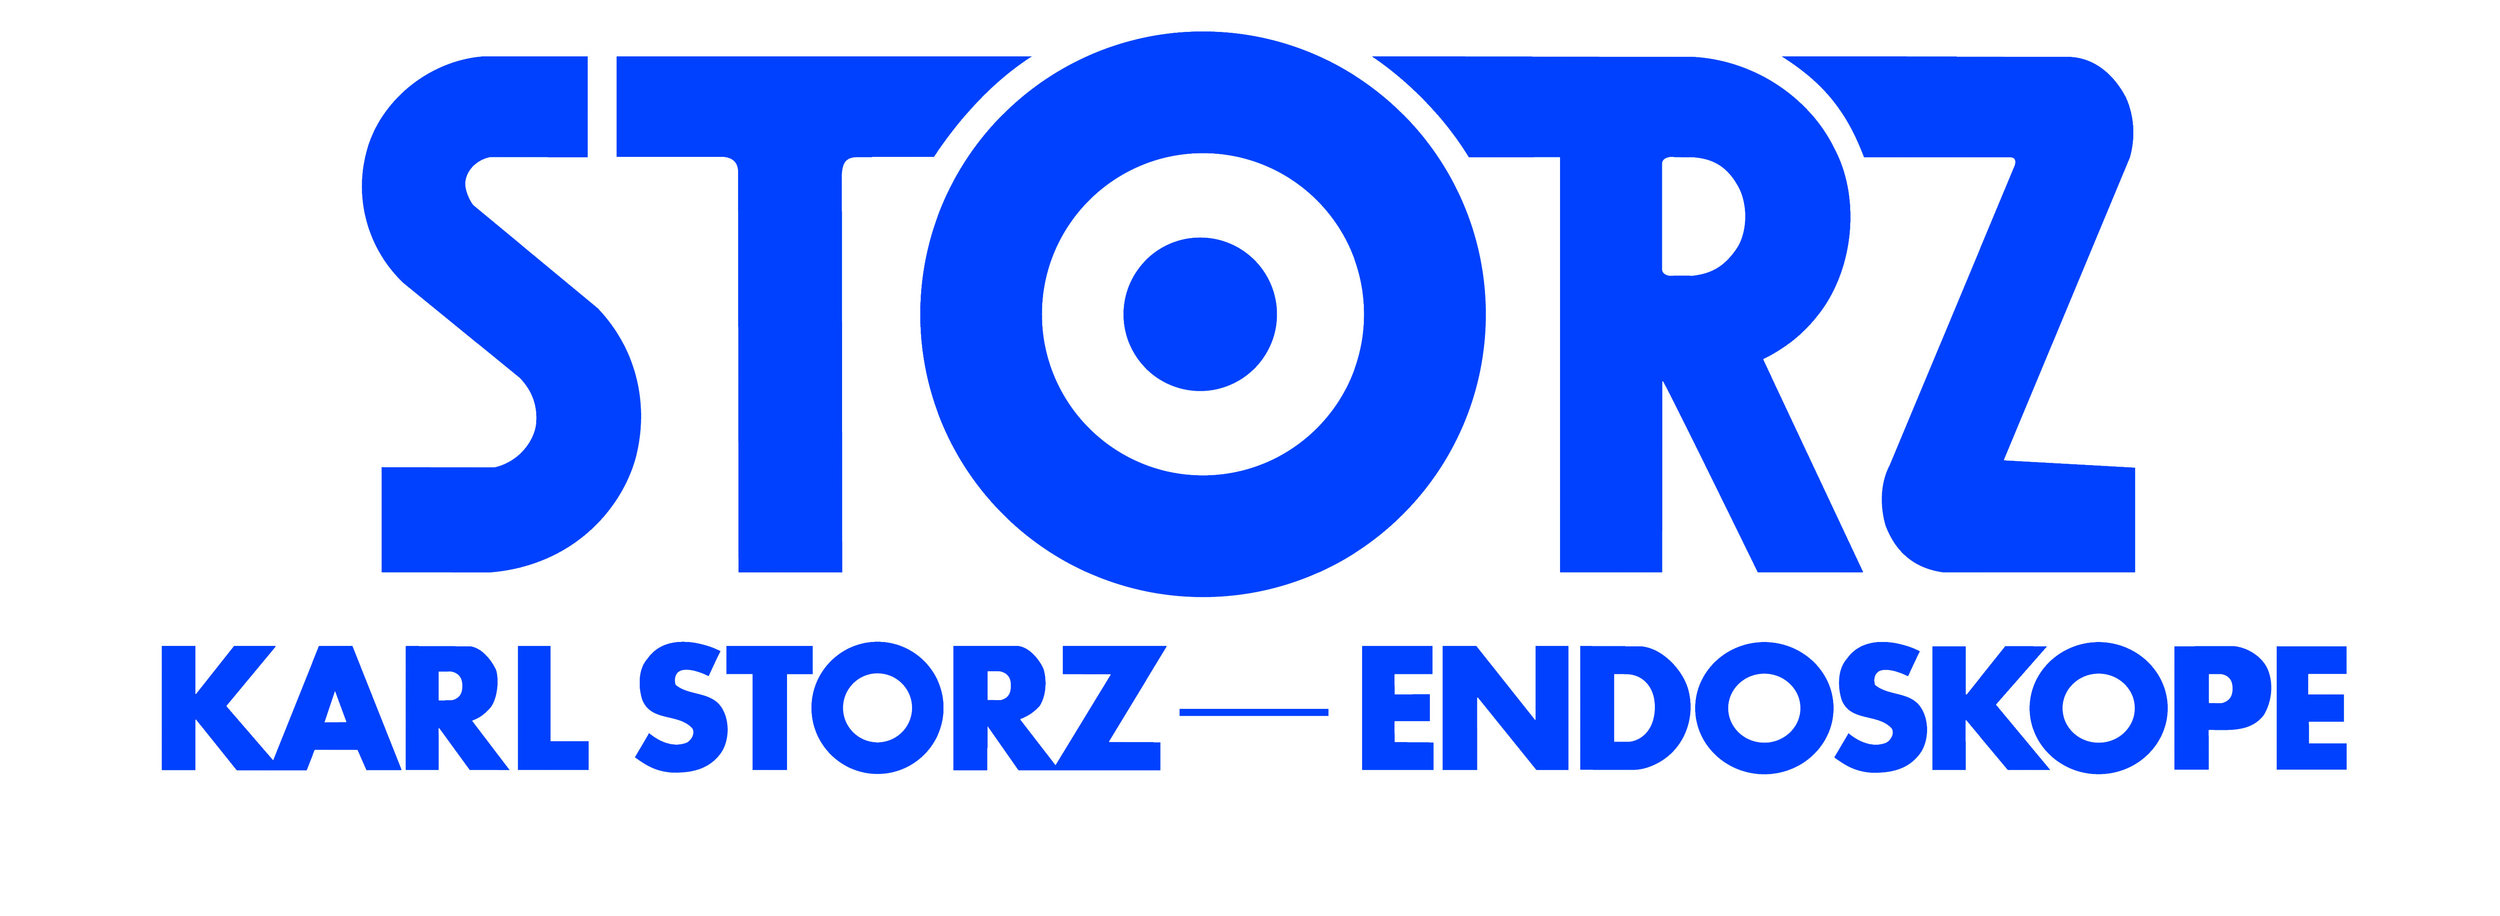 KARLSTORZ-logo.jpg